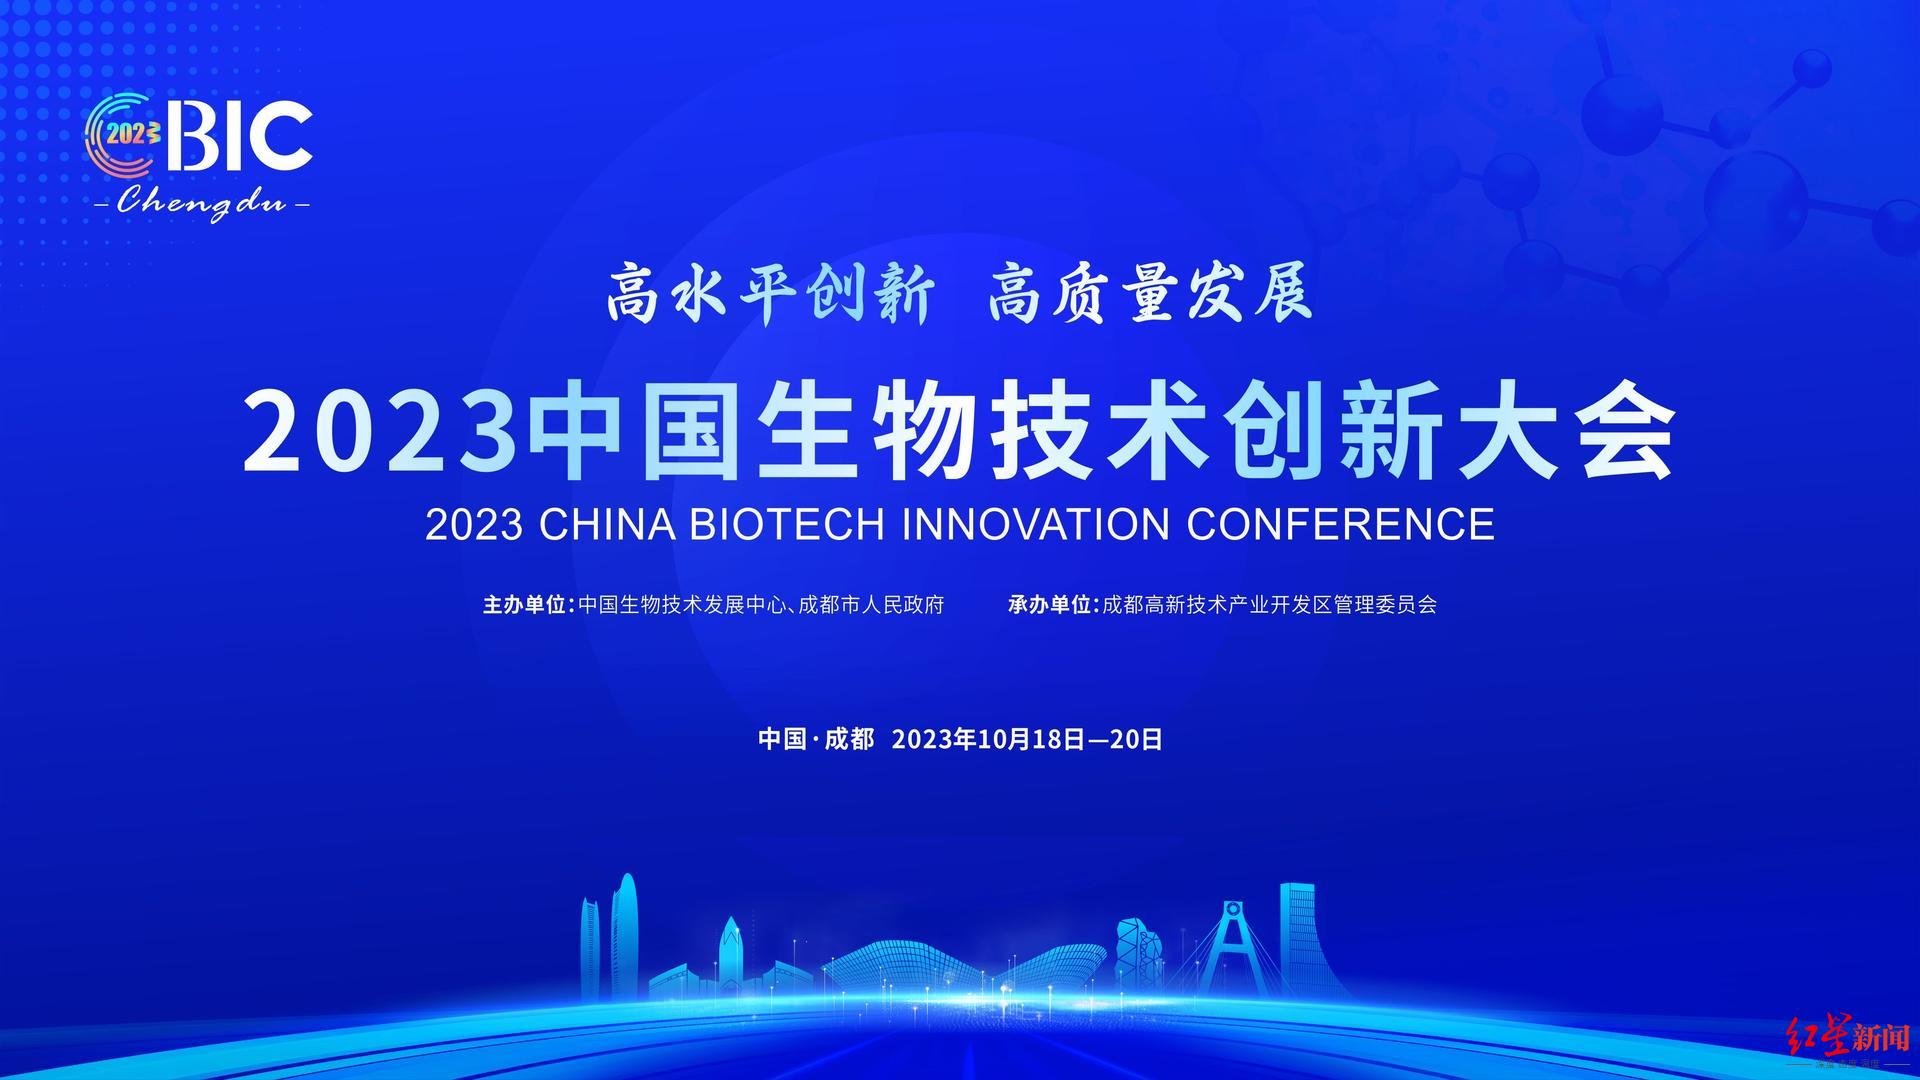 首发4本权威医学报告新书，2023中国生物技术创新大会将于10月18日